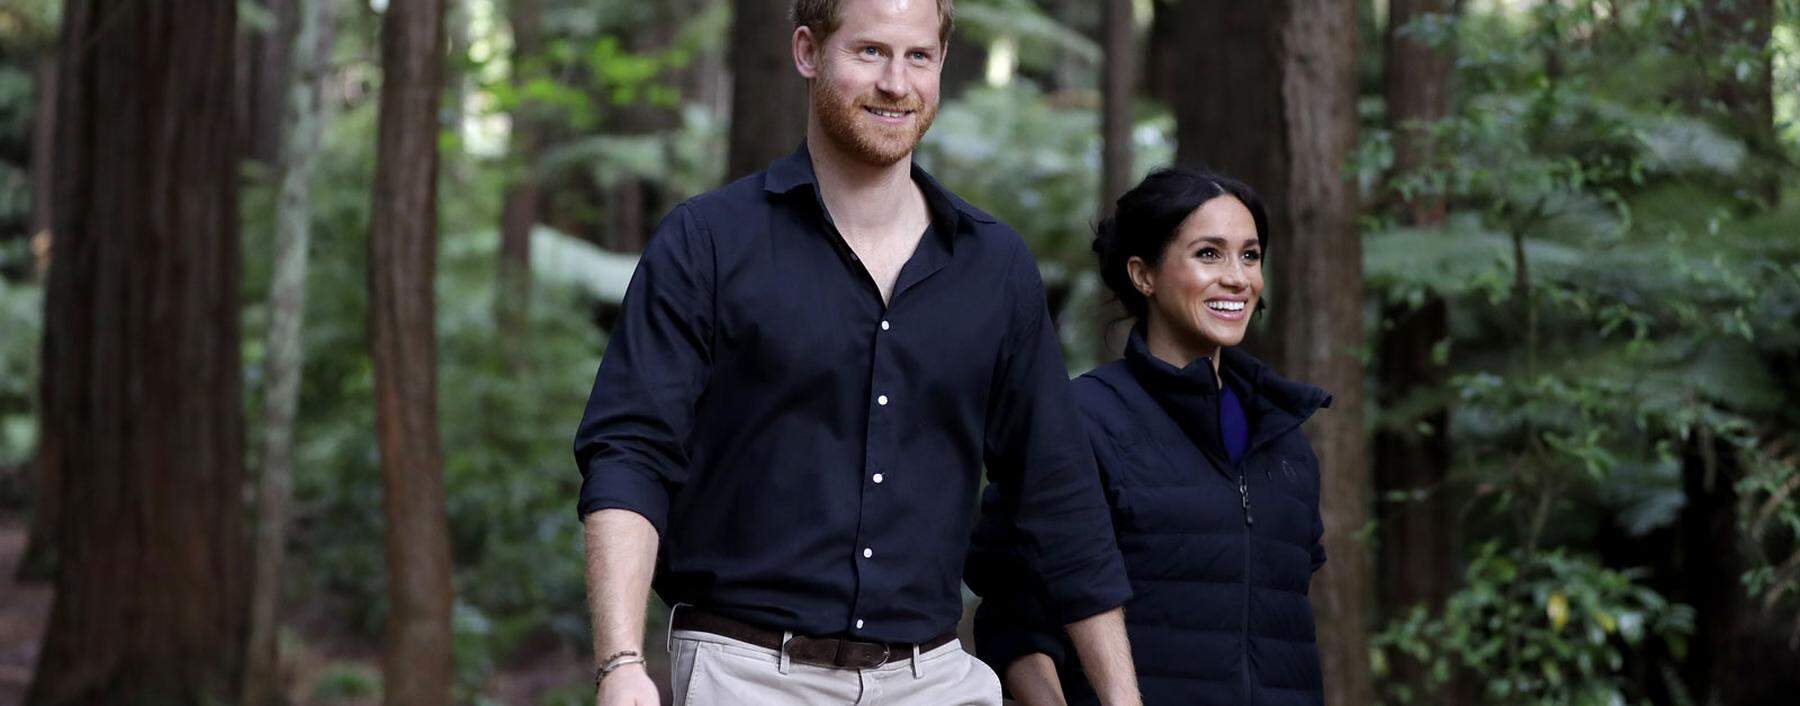 Prinz Harry und Herzogin Meghan auf royaler Tour im Redwoods Tree Walk in Neuseeland, 2018